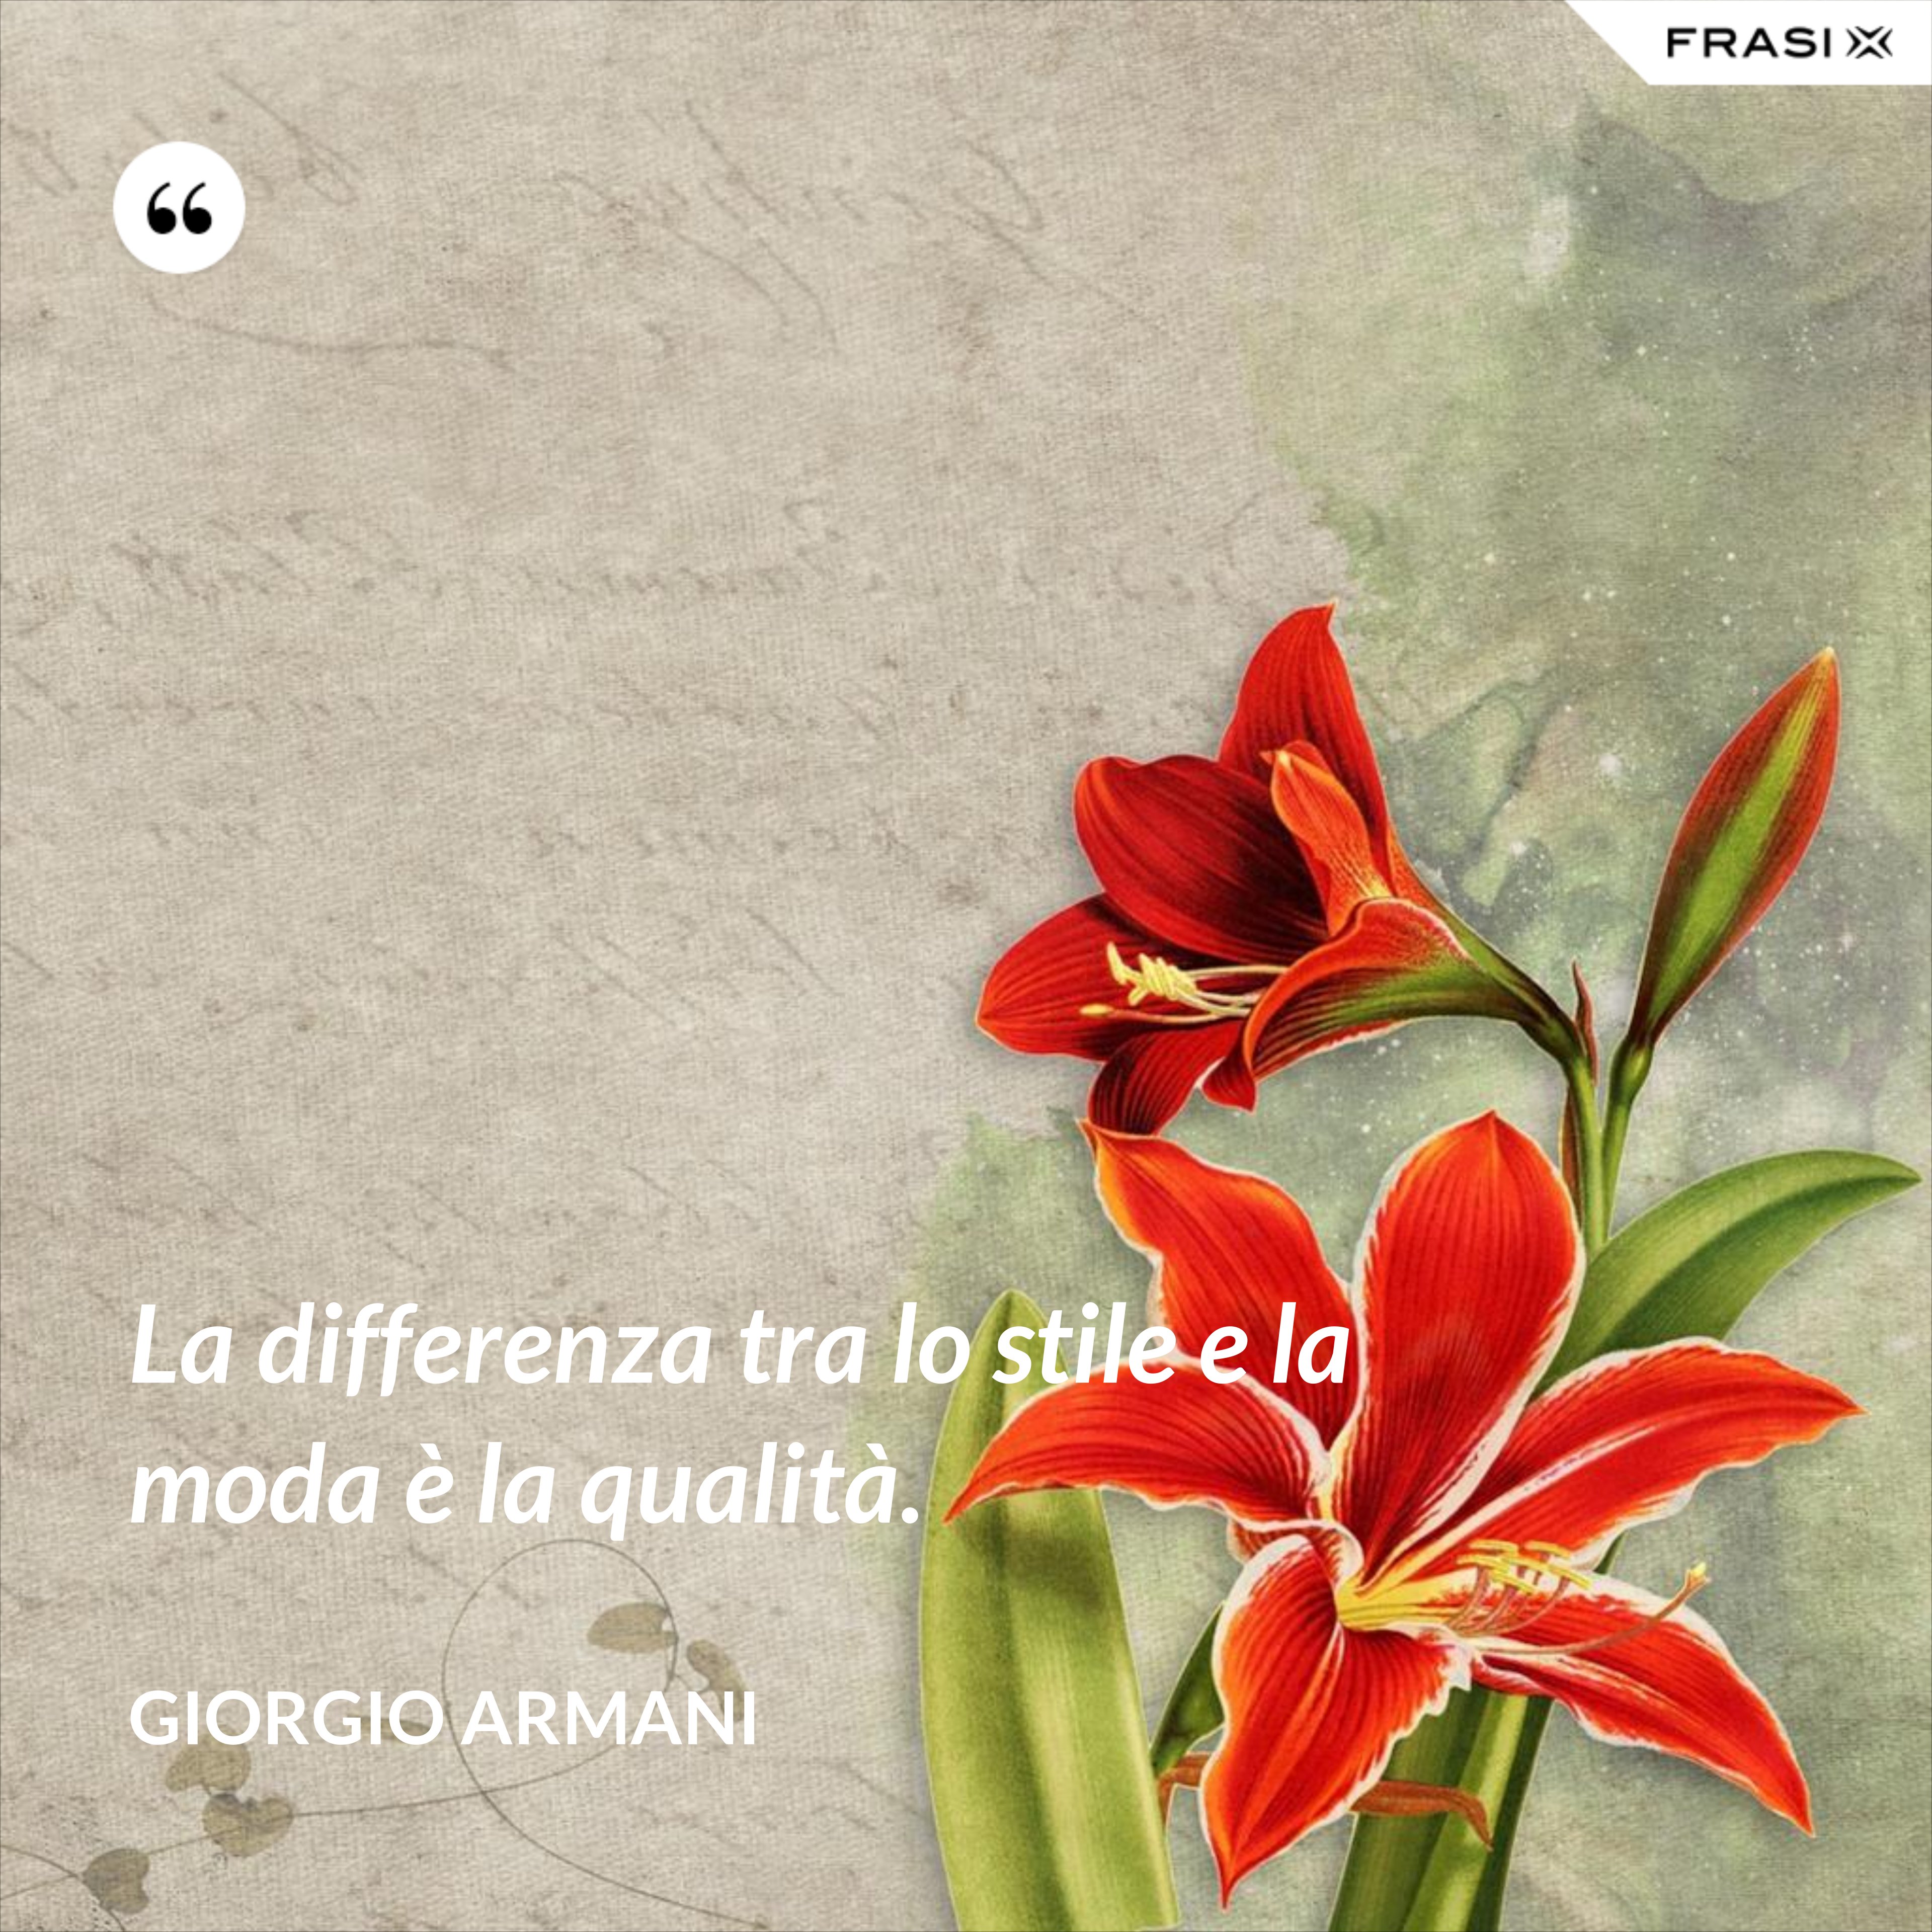 La differenza tra lo stile e la moda è la qualità. - Giorgio Armani